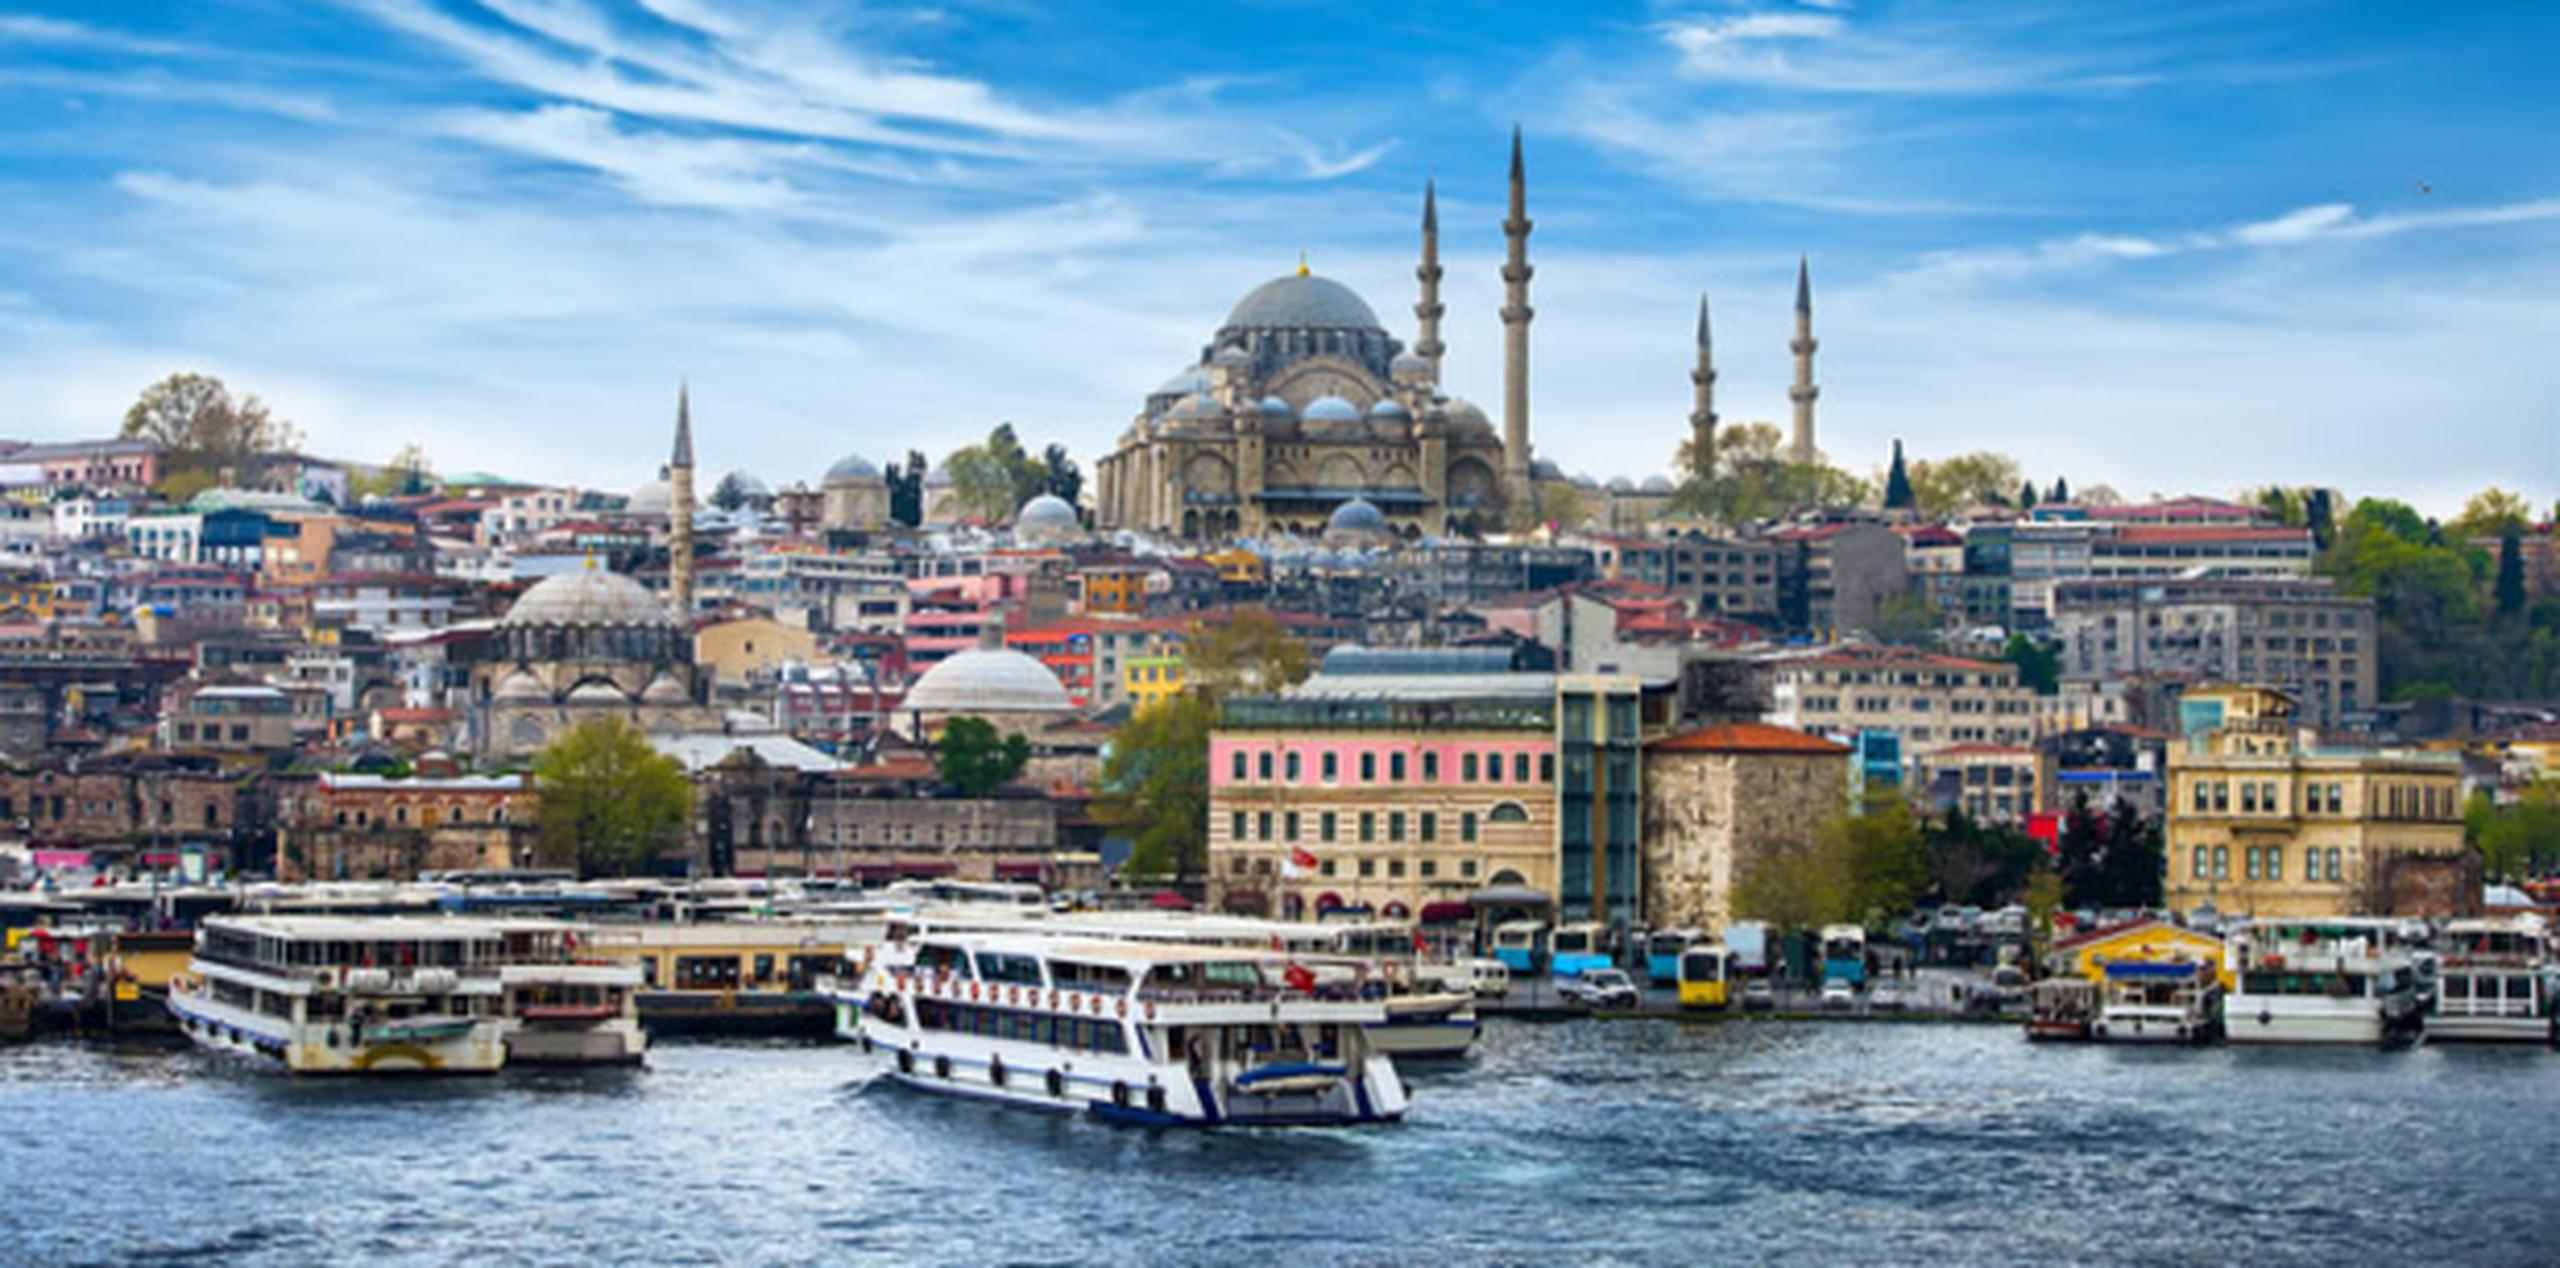 La ciudad de Estambul en Turquía. (Shutterstock)